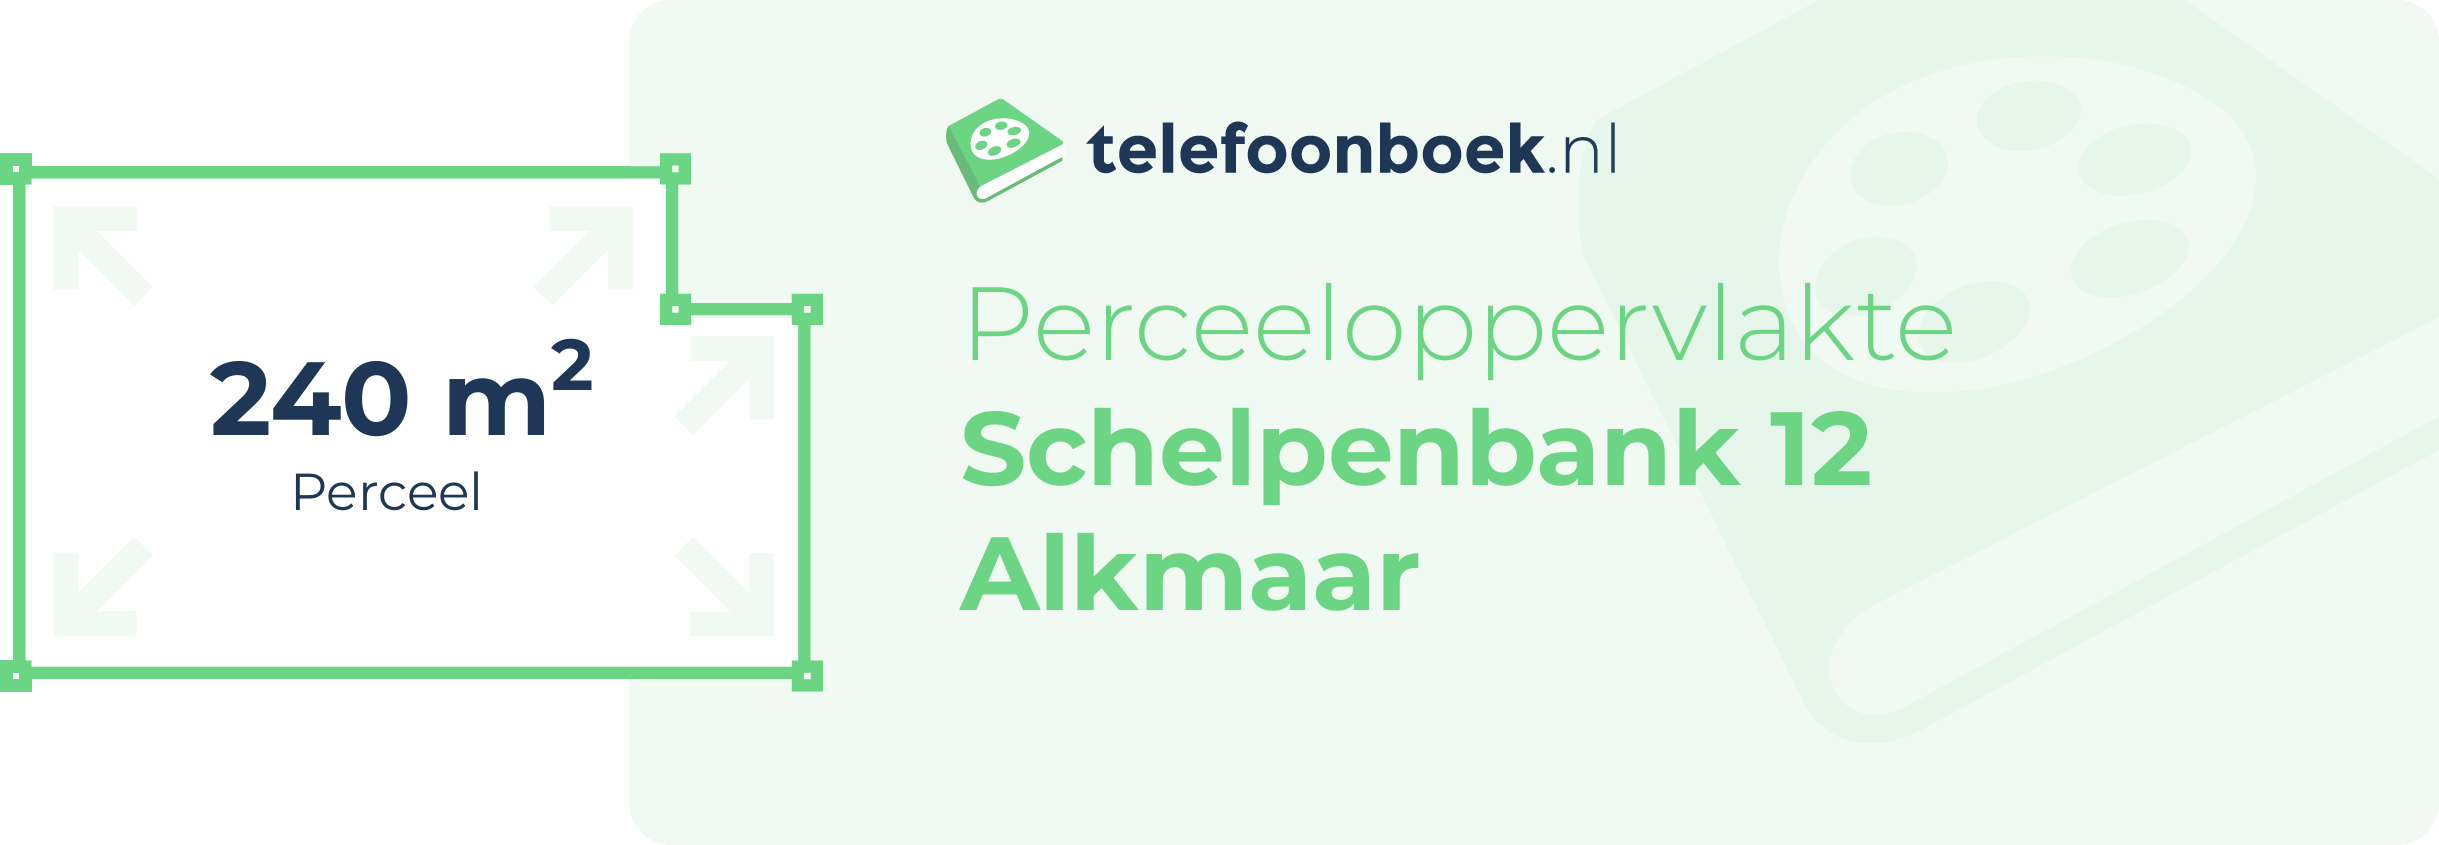 Perceeloppervlakte Schelpenbank 12 Alkmaar